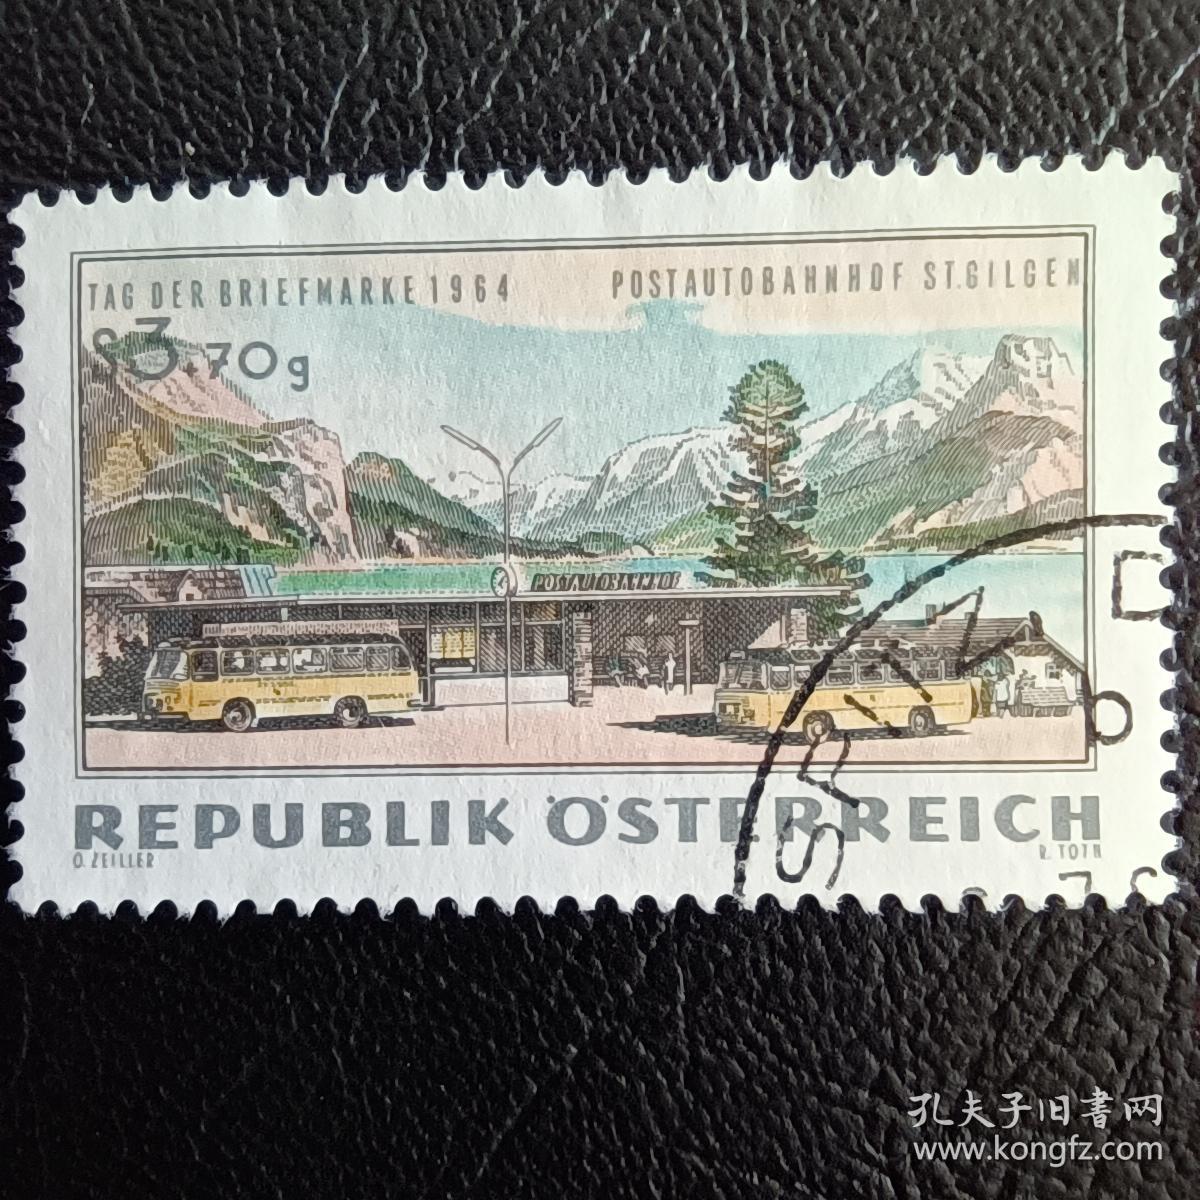 Ox0214外国邮票奥地利1964年 邮票日 公共汽车站 雕刻版 信销 1全 邮戳随机